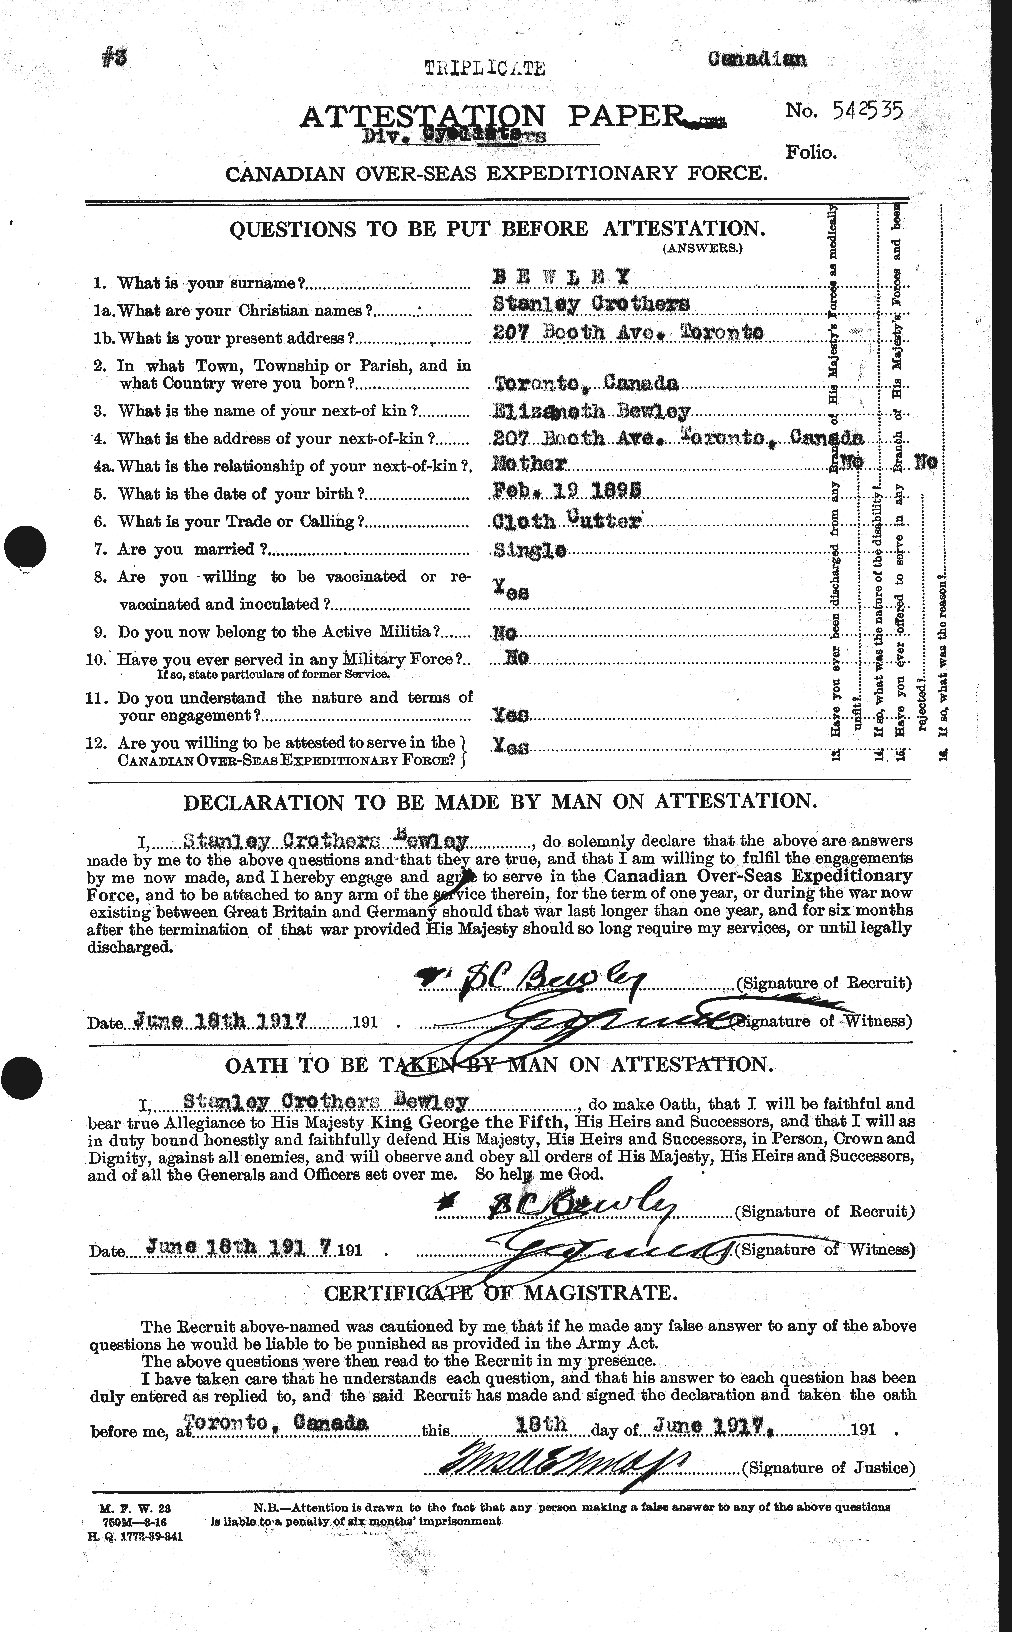 Dossiers du Personnel de la Première Guerre mondiale - CEC 237467a